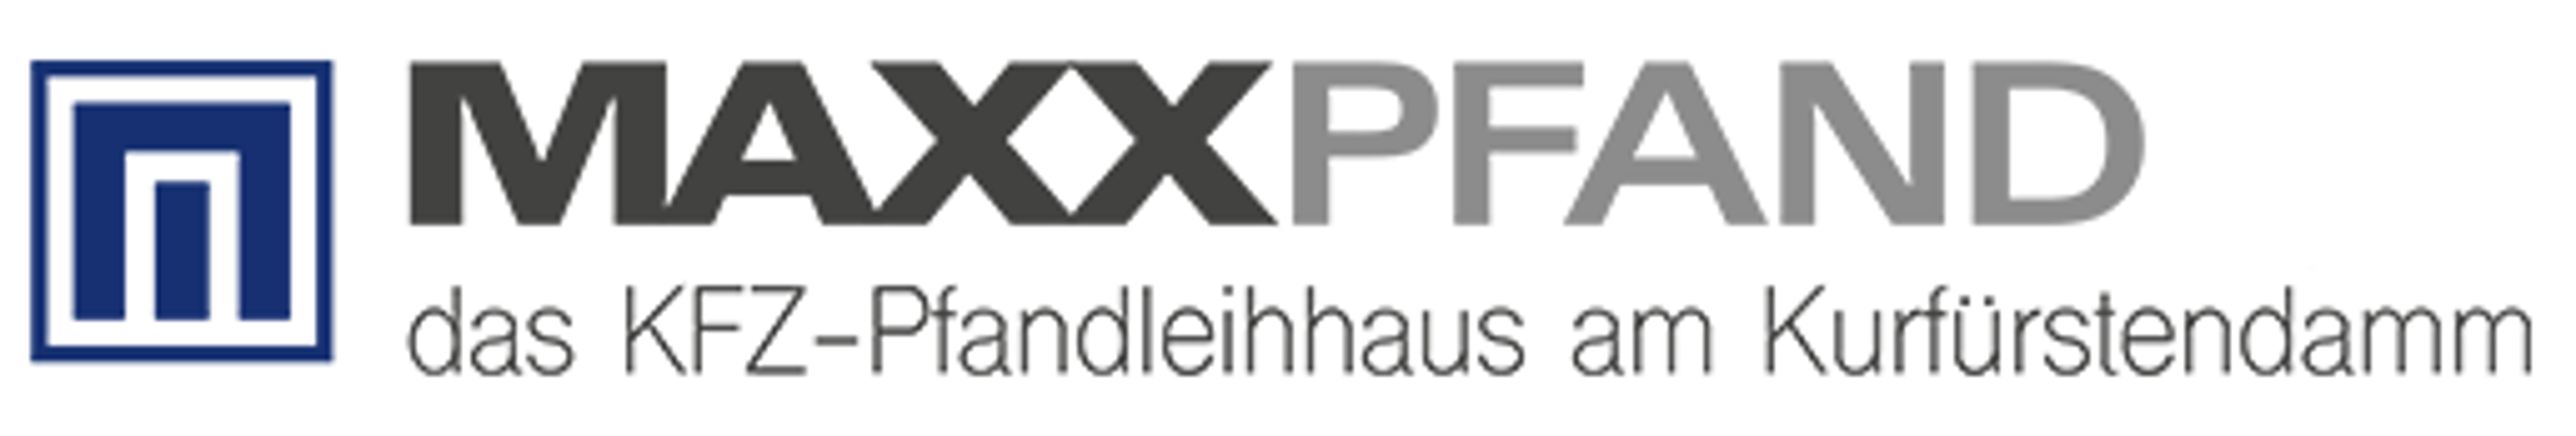 MAXXPfand-pfandhaus-in-hamburg-logo